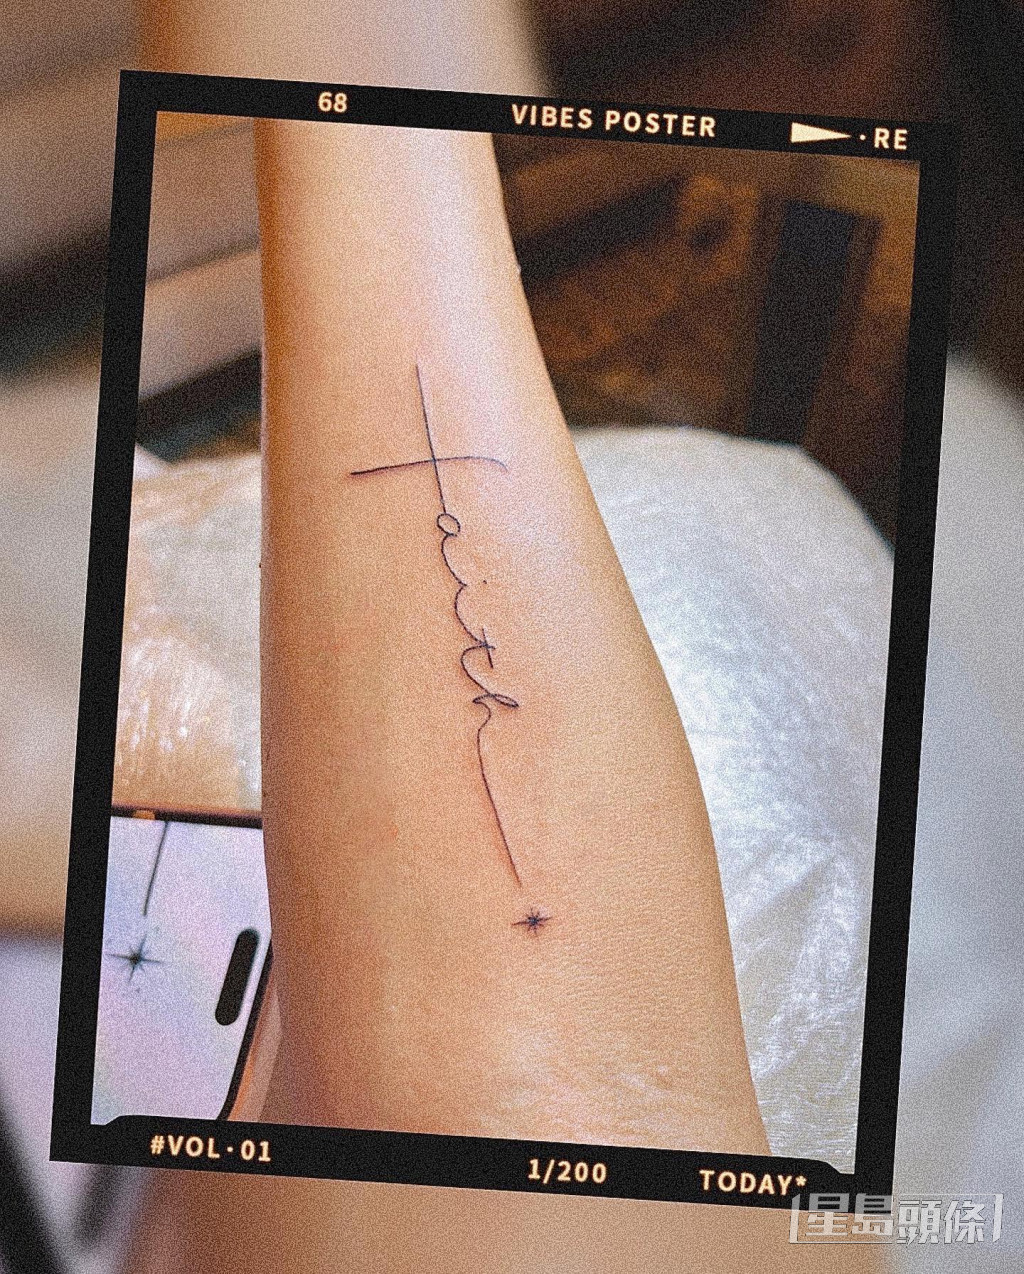 雙臂分別紋上「love」、「faith」，她指是自己在這困難的一年裡最喜歡的字。